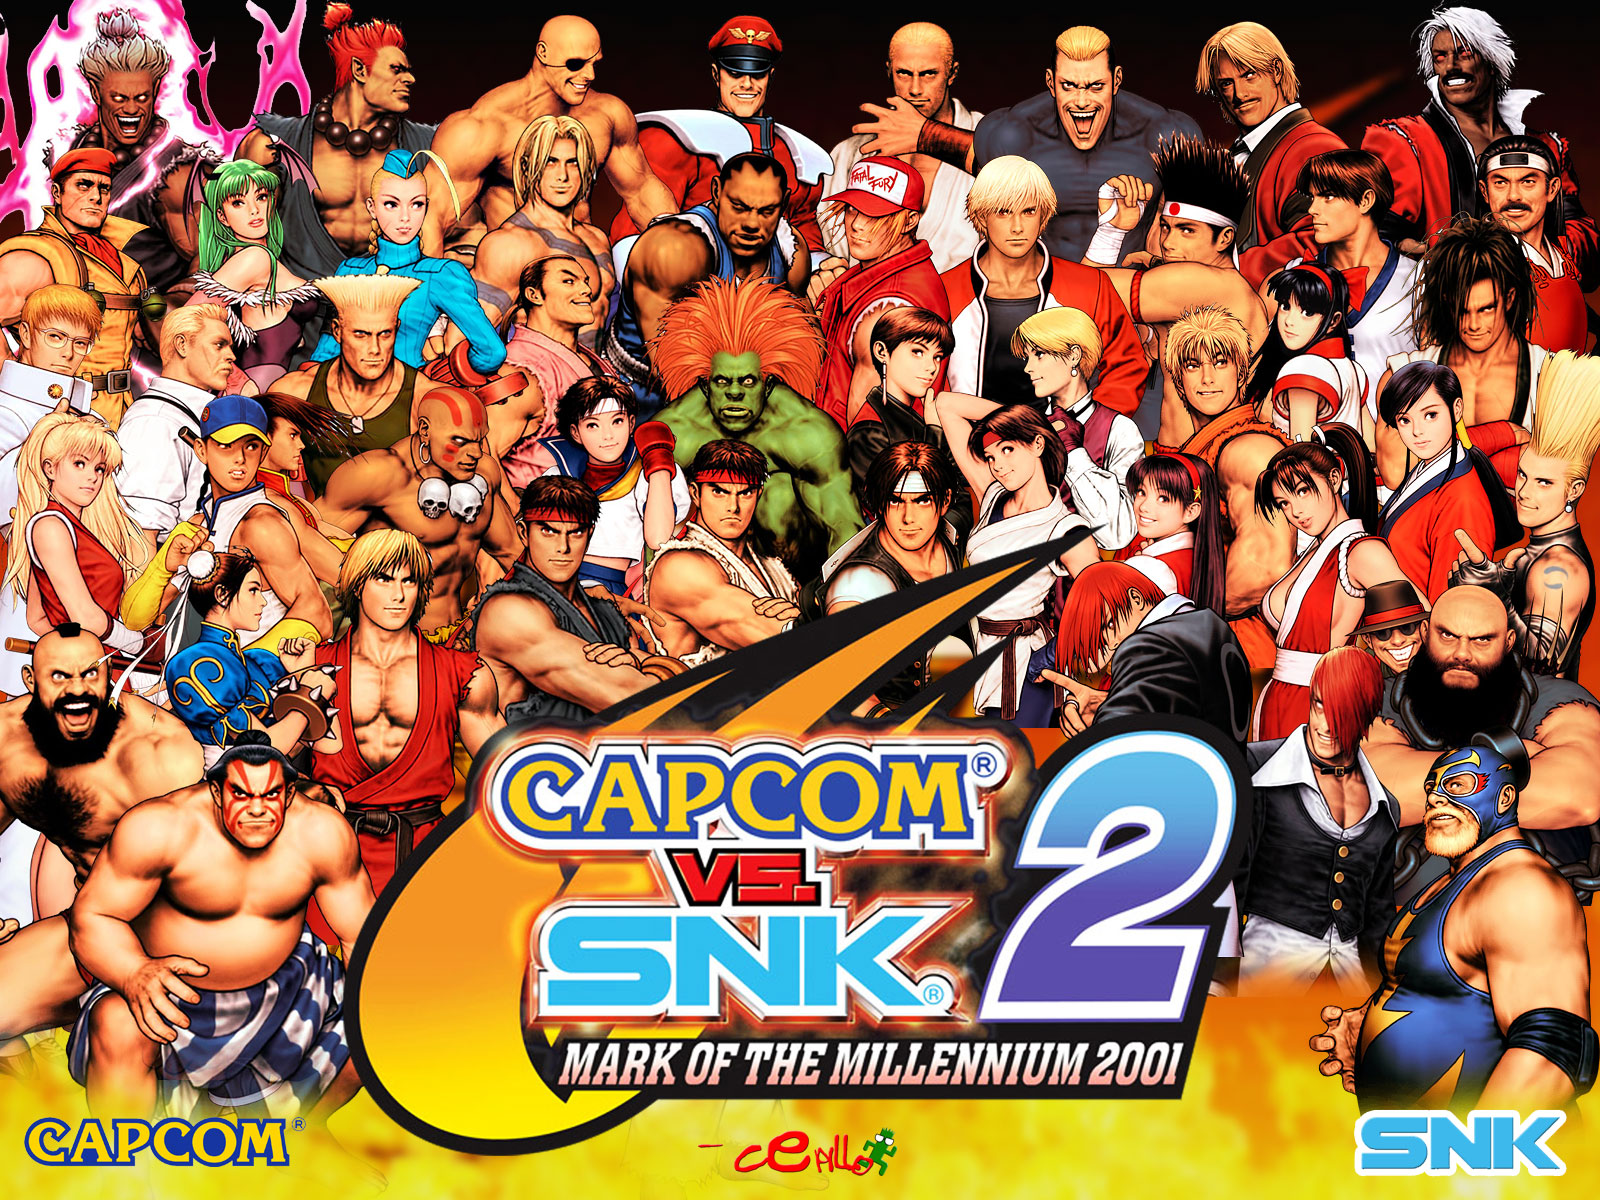 Capcom vs snk 2